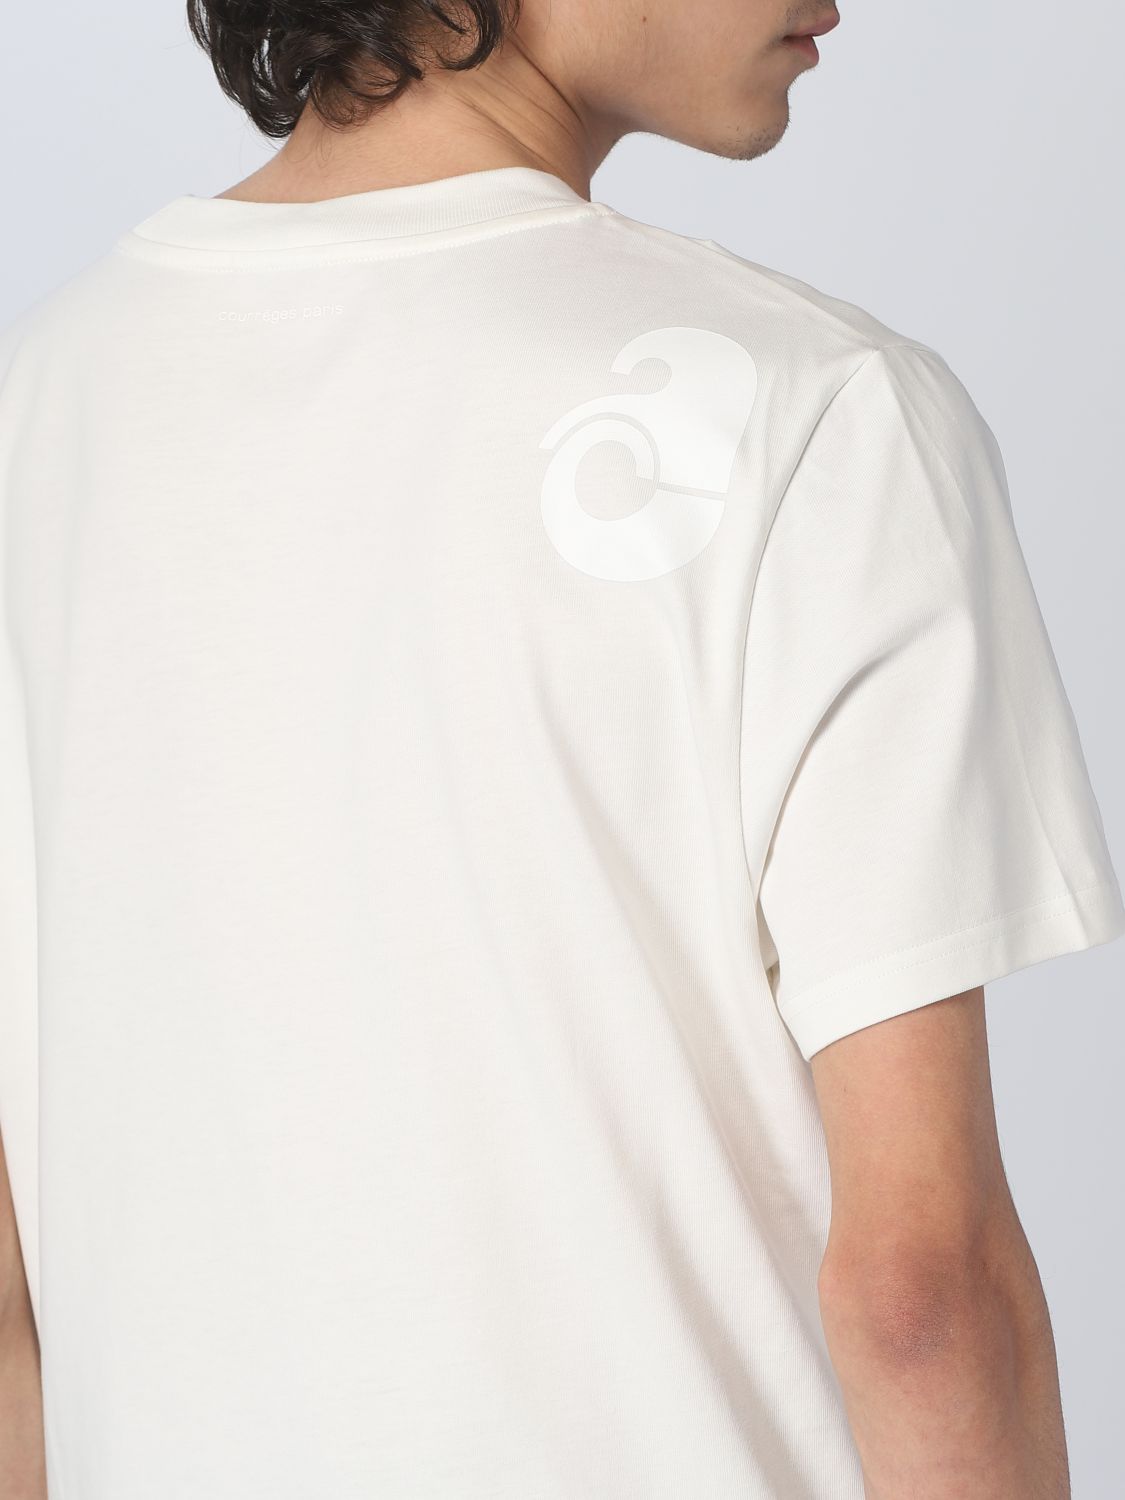 T-shirt Courrèges: T-shirt CourrÈges in cotone bianco 4